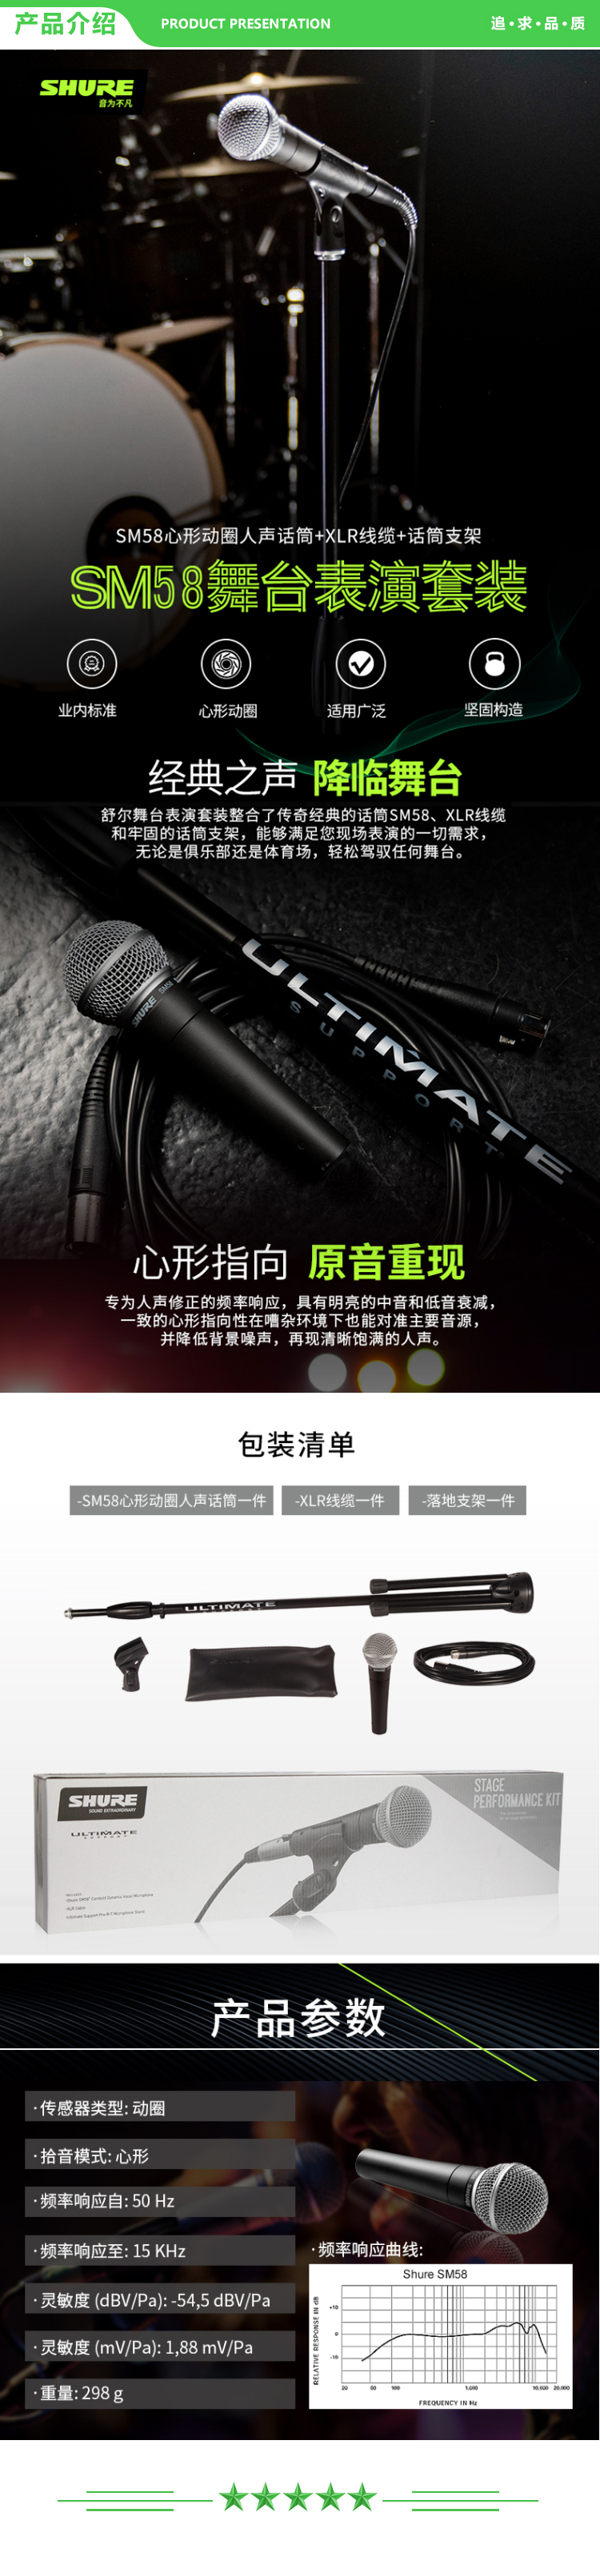 舒尔 Shure MV88+ 便携视频录音套装 内含防风罩 MV88+ SE215 专业版透明色 主播录音 .jpg